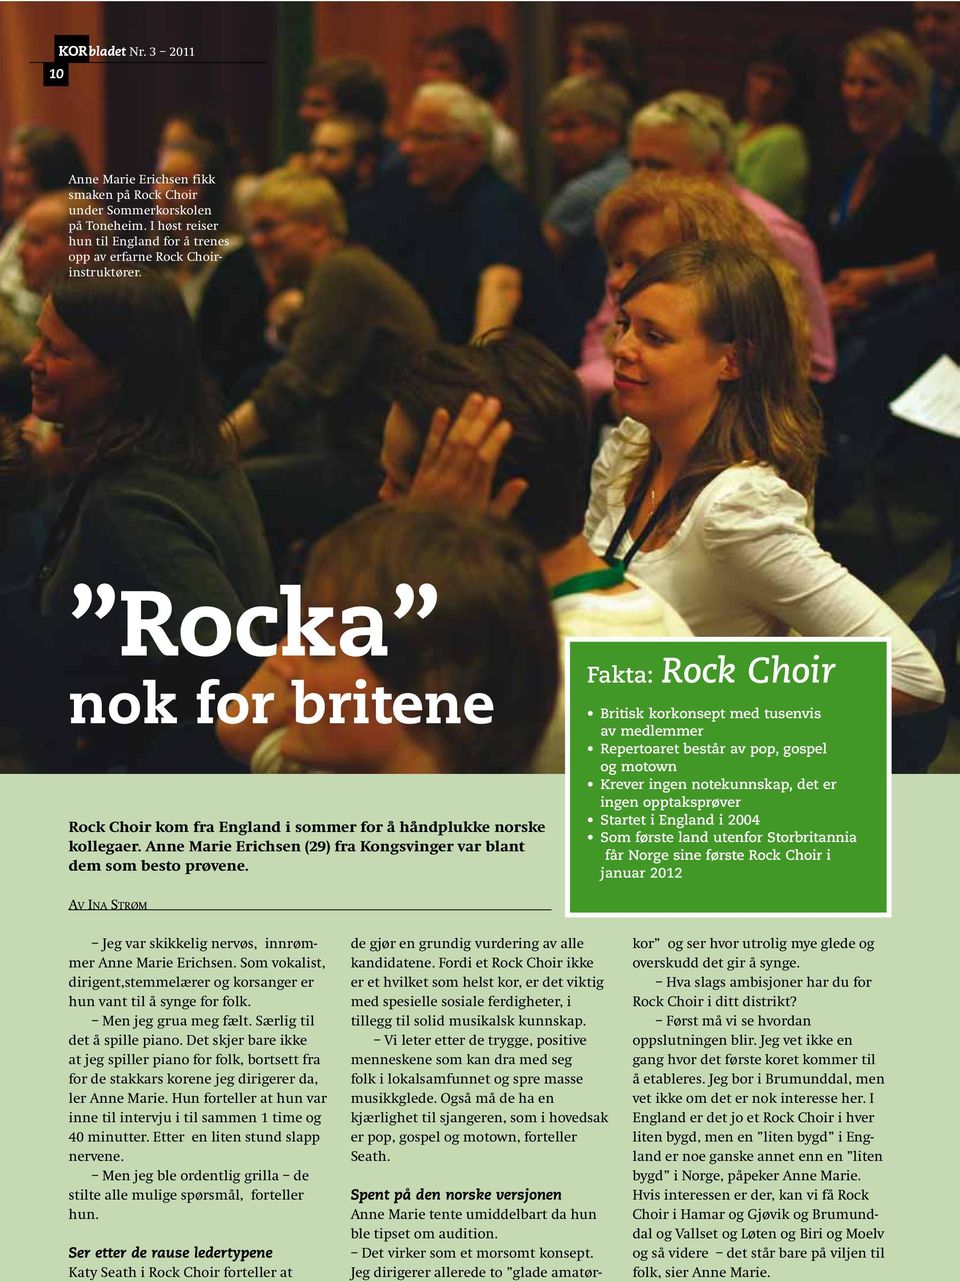 Fakta: Rock Choir av medlemmer og motown ingen opptaksprøver får Norge sine første Rock Choir i januar 2012 AV INA STRØM Jeg var skikkelig nervøs, innrømmer Anne Marie Erichsen.